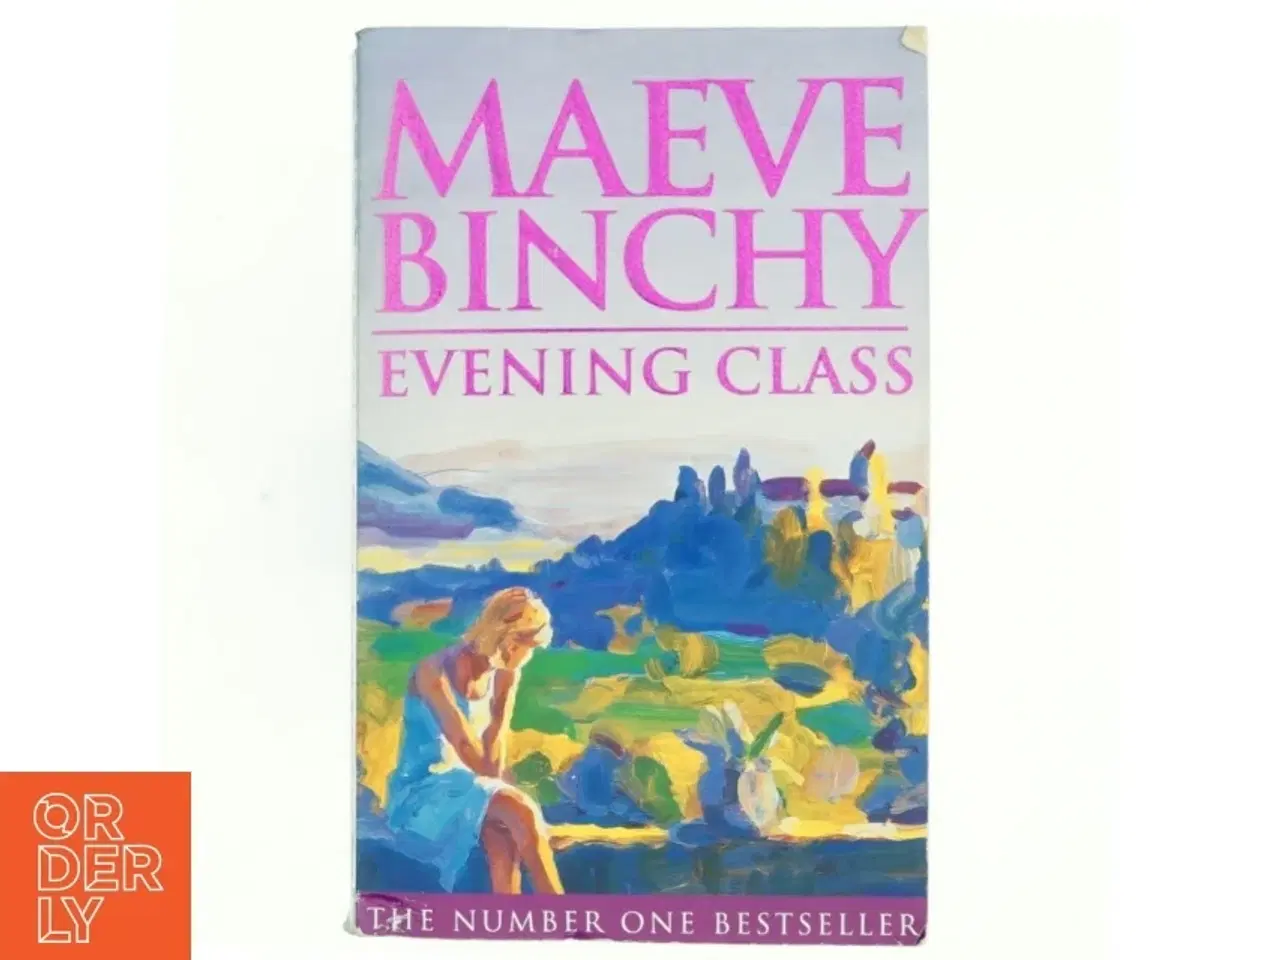 Billede 1 - Evening class af Maeve Binchy (Bog)